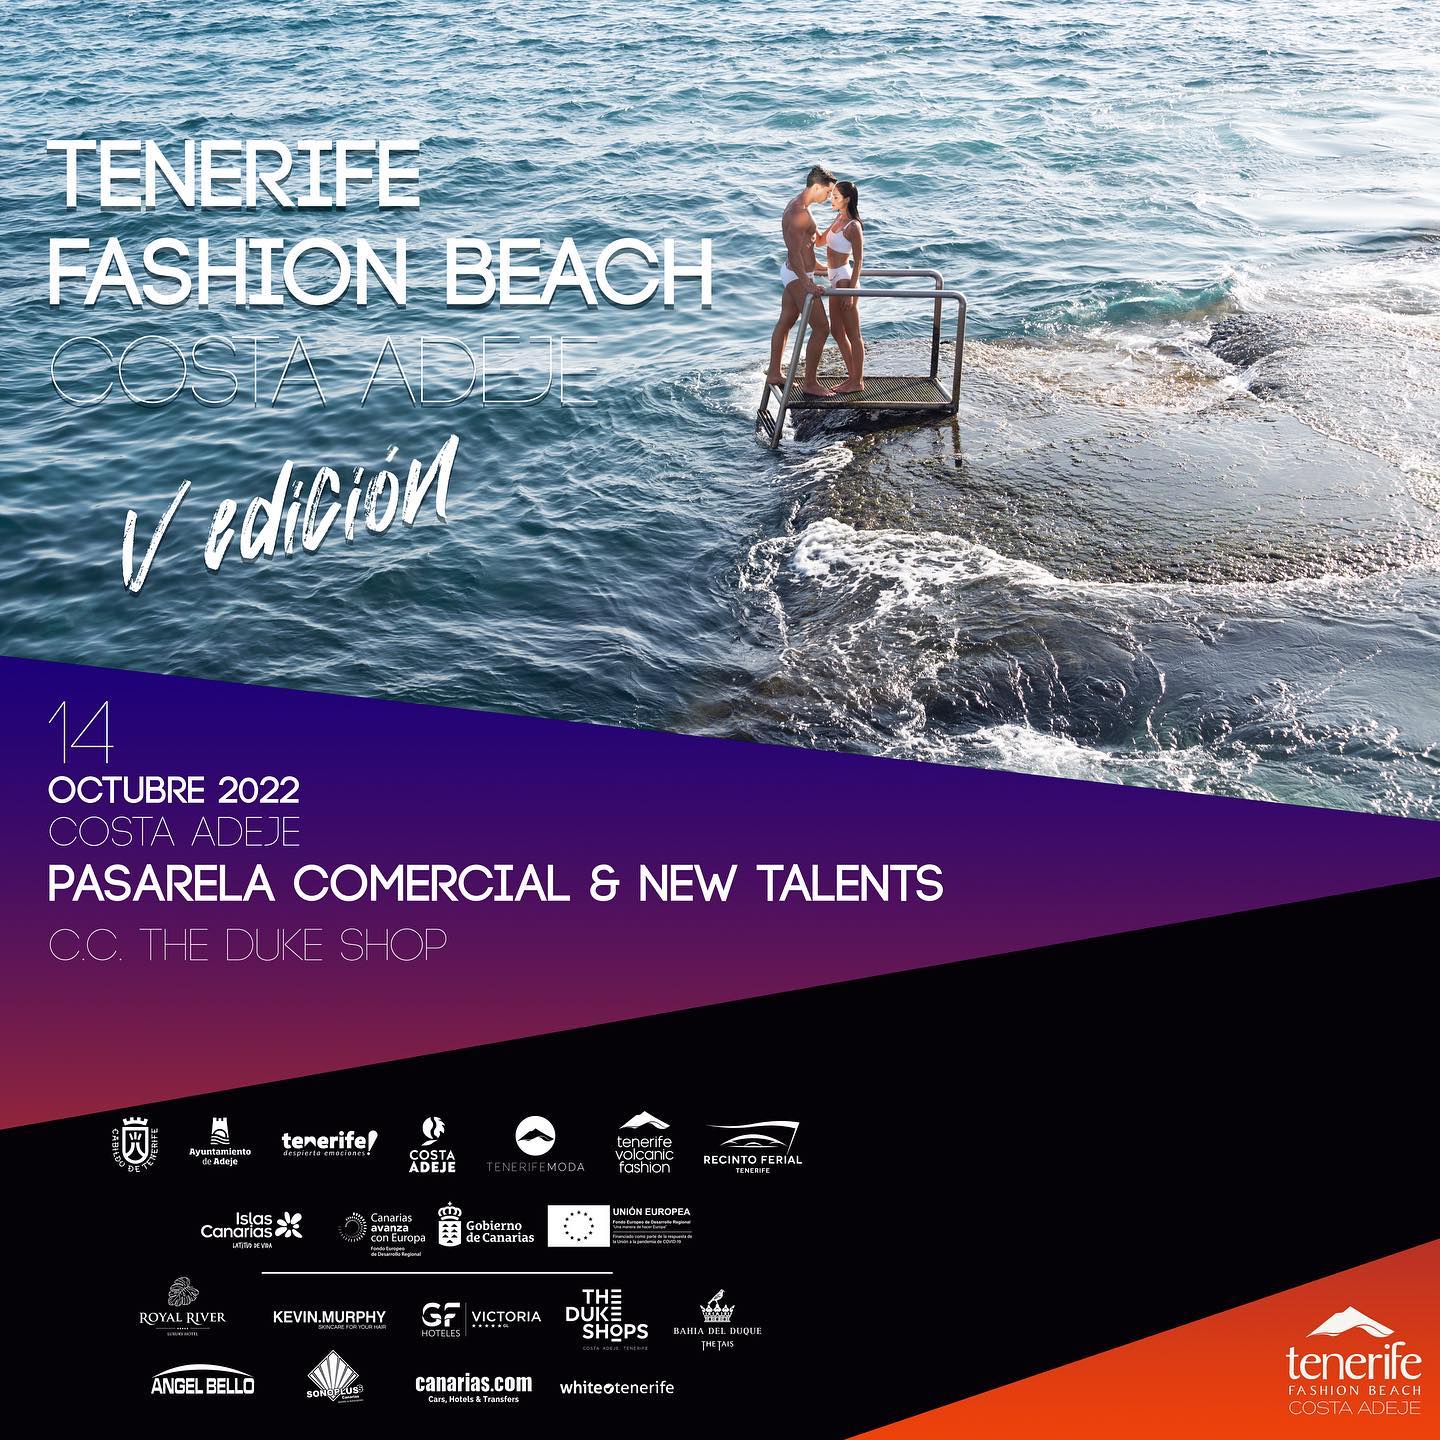 Cartel anunciante de la pasarela comercial de la Tenerife Fashion Beach Costa Adeje